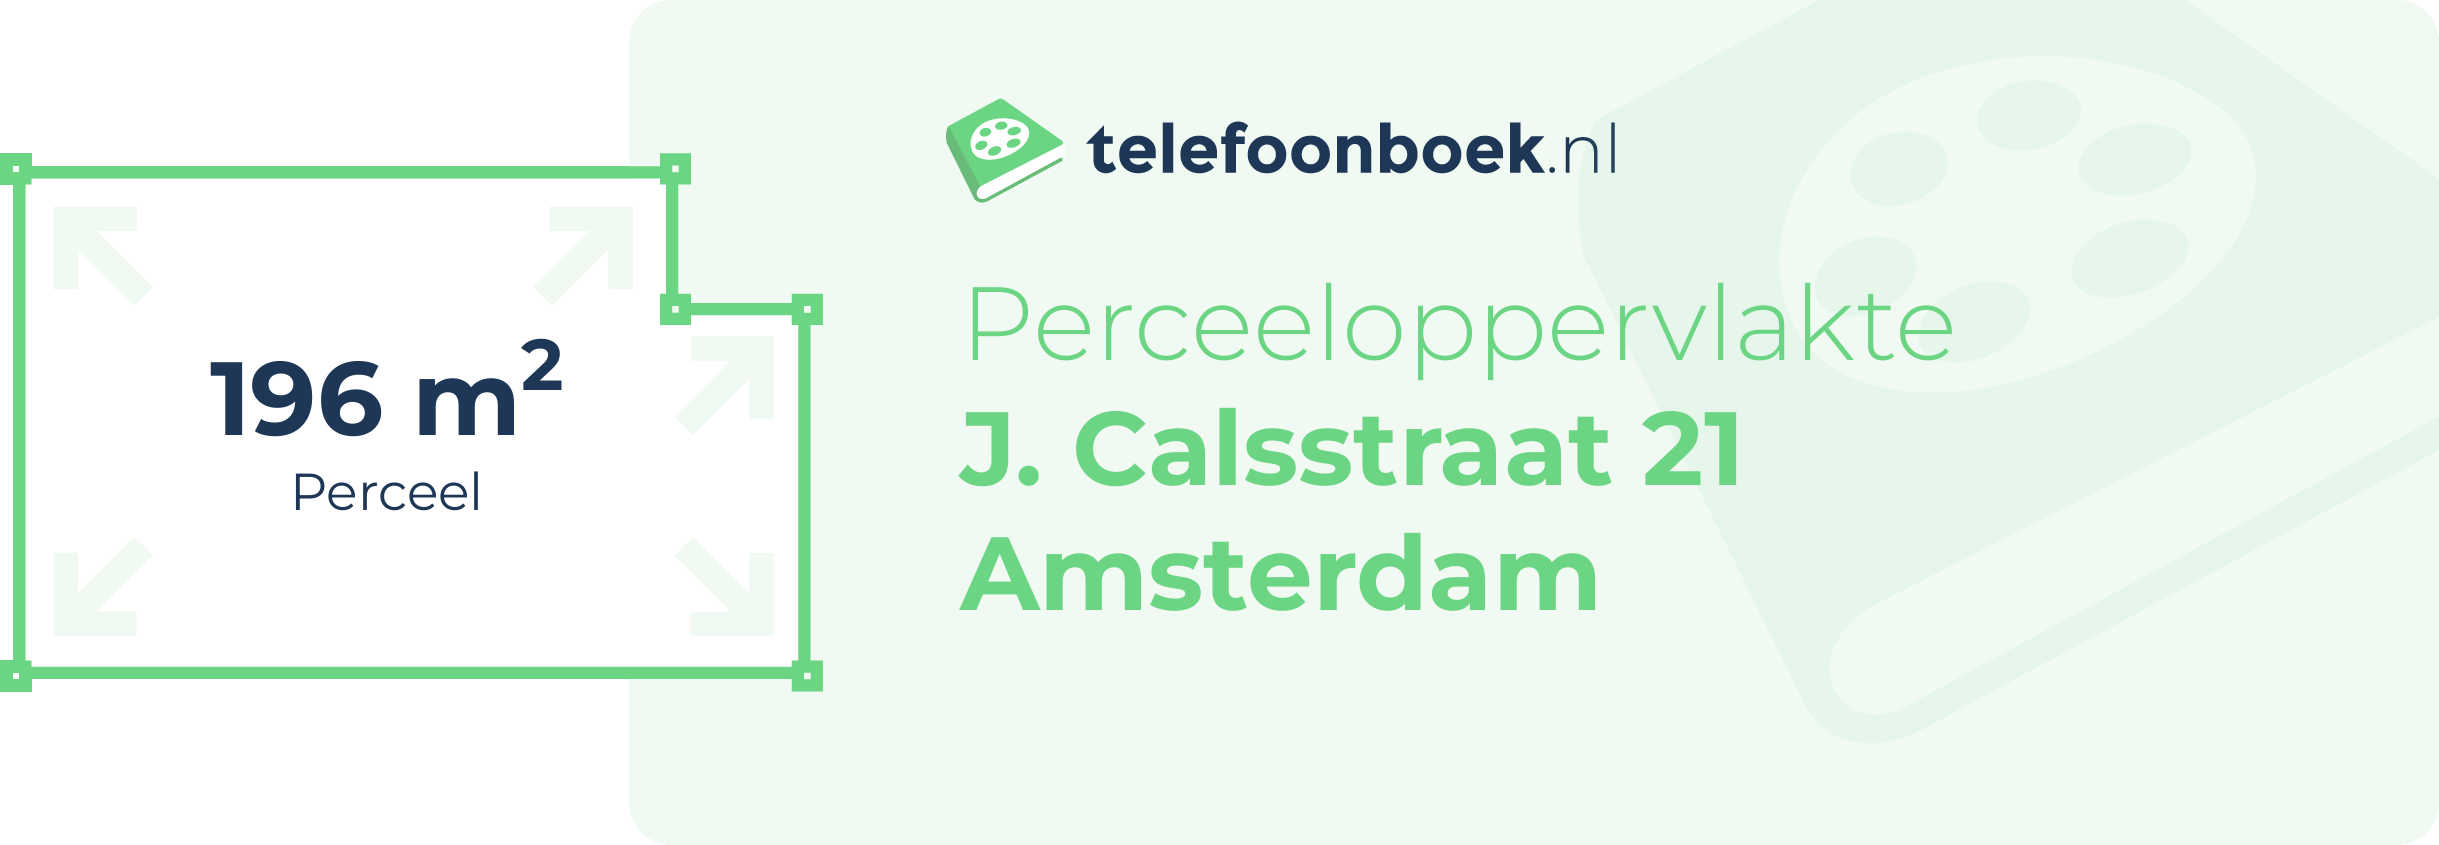 Perceeloppervlakte J. Calsstraat 21 Amsterdam